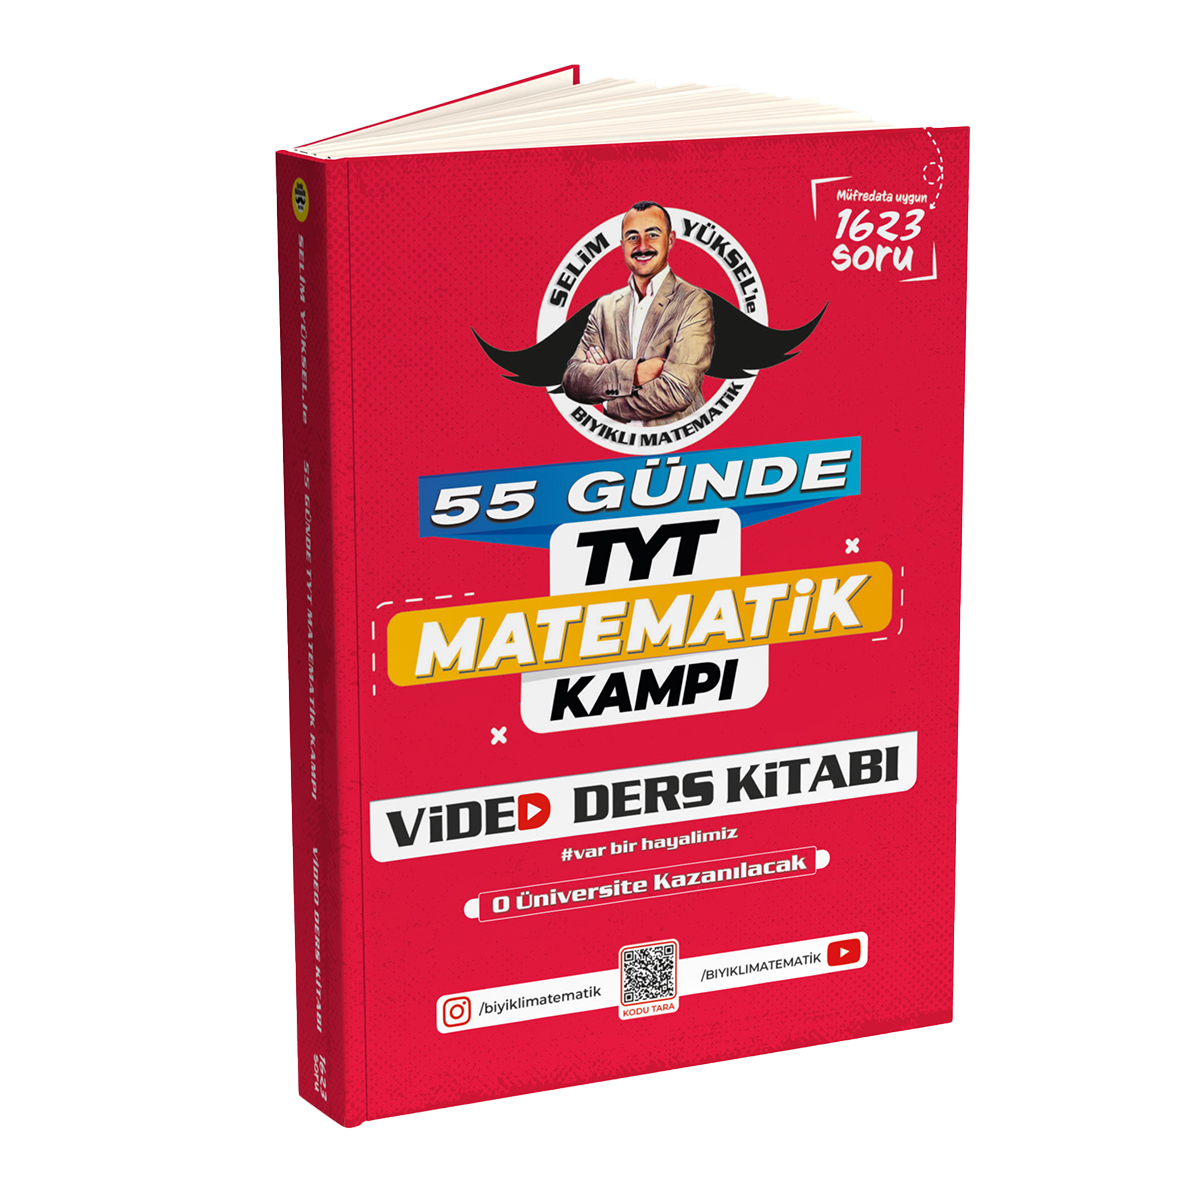 Bıyıklı Matematik 55 Günde Tyt Matematik Video Ders Kitabı Selim Yüksel